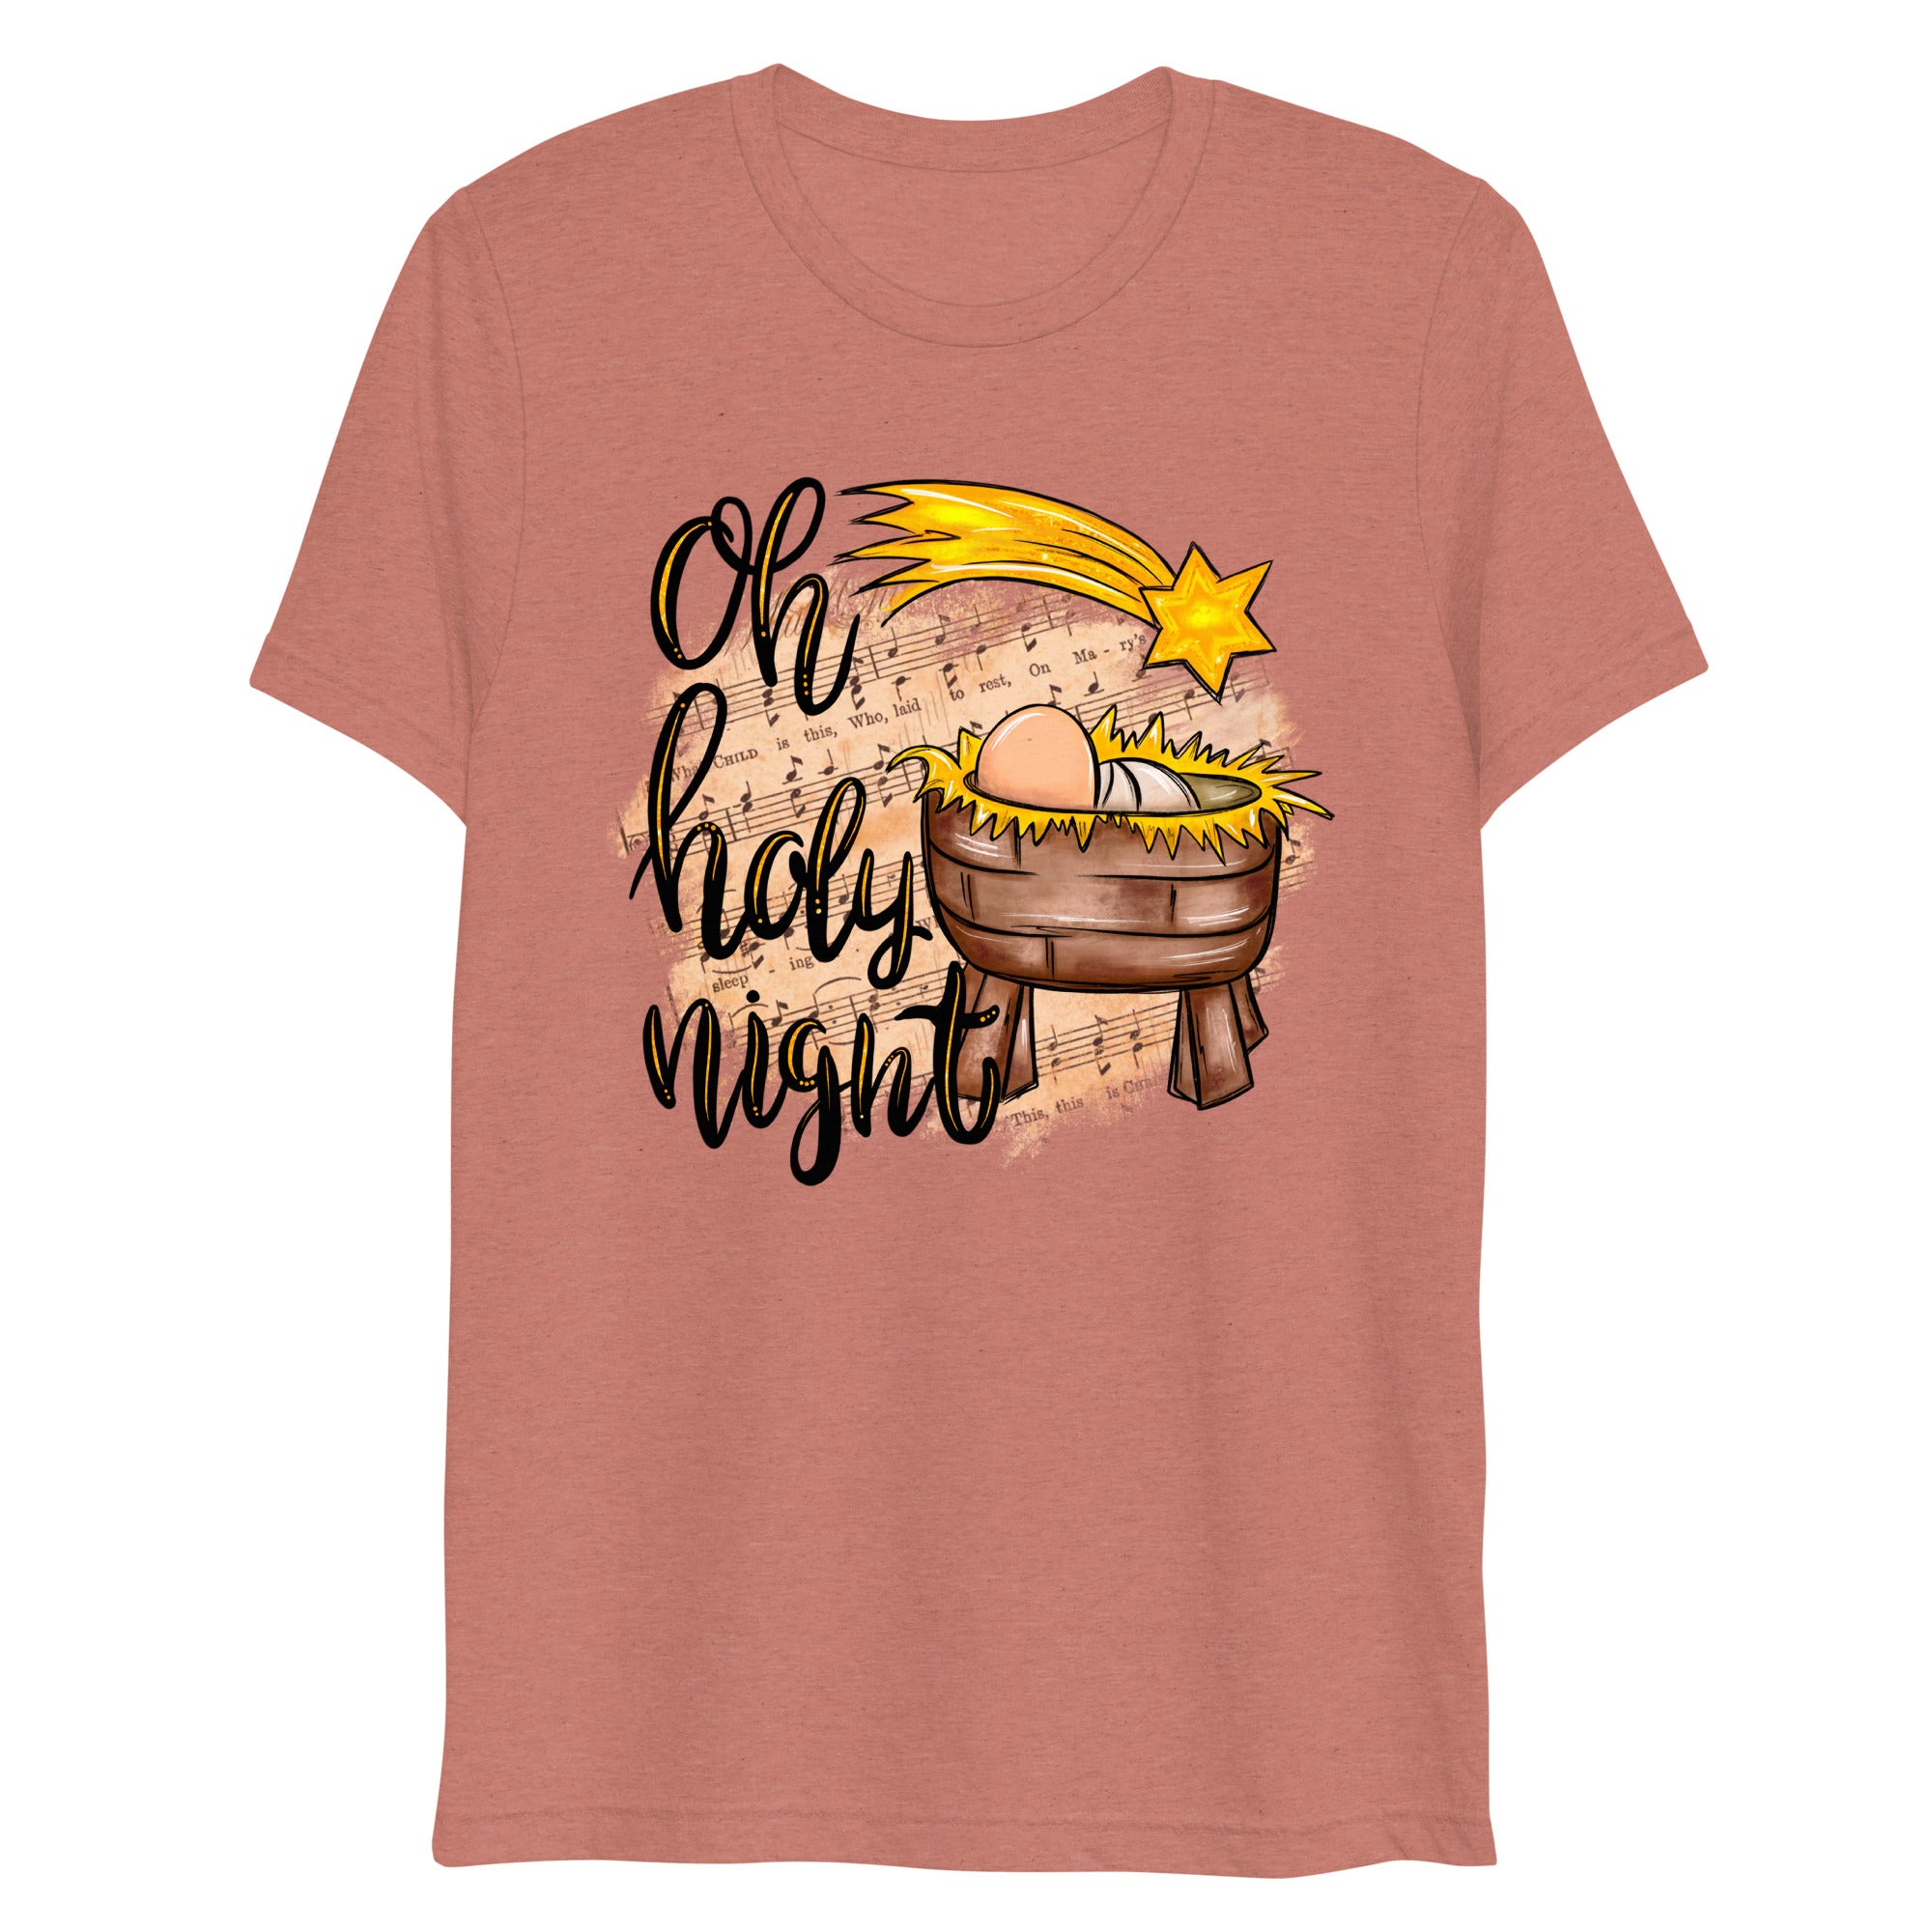 Oh Holy Night - Hymn - Women's Tri-Blend T-Shirt